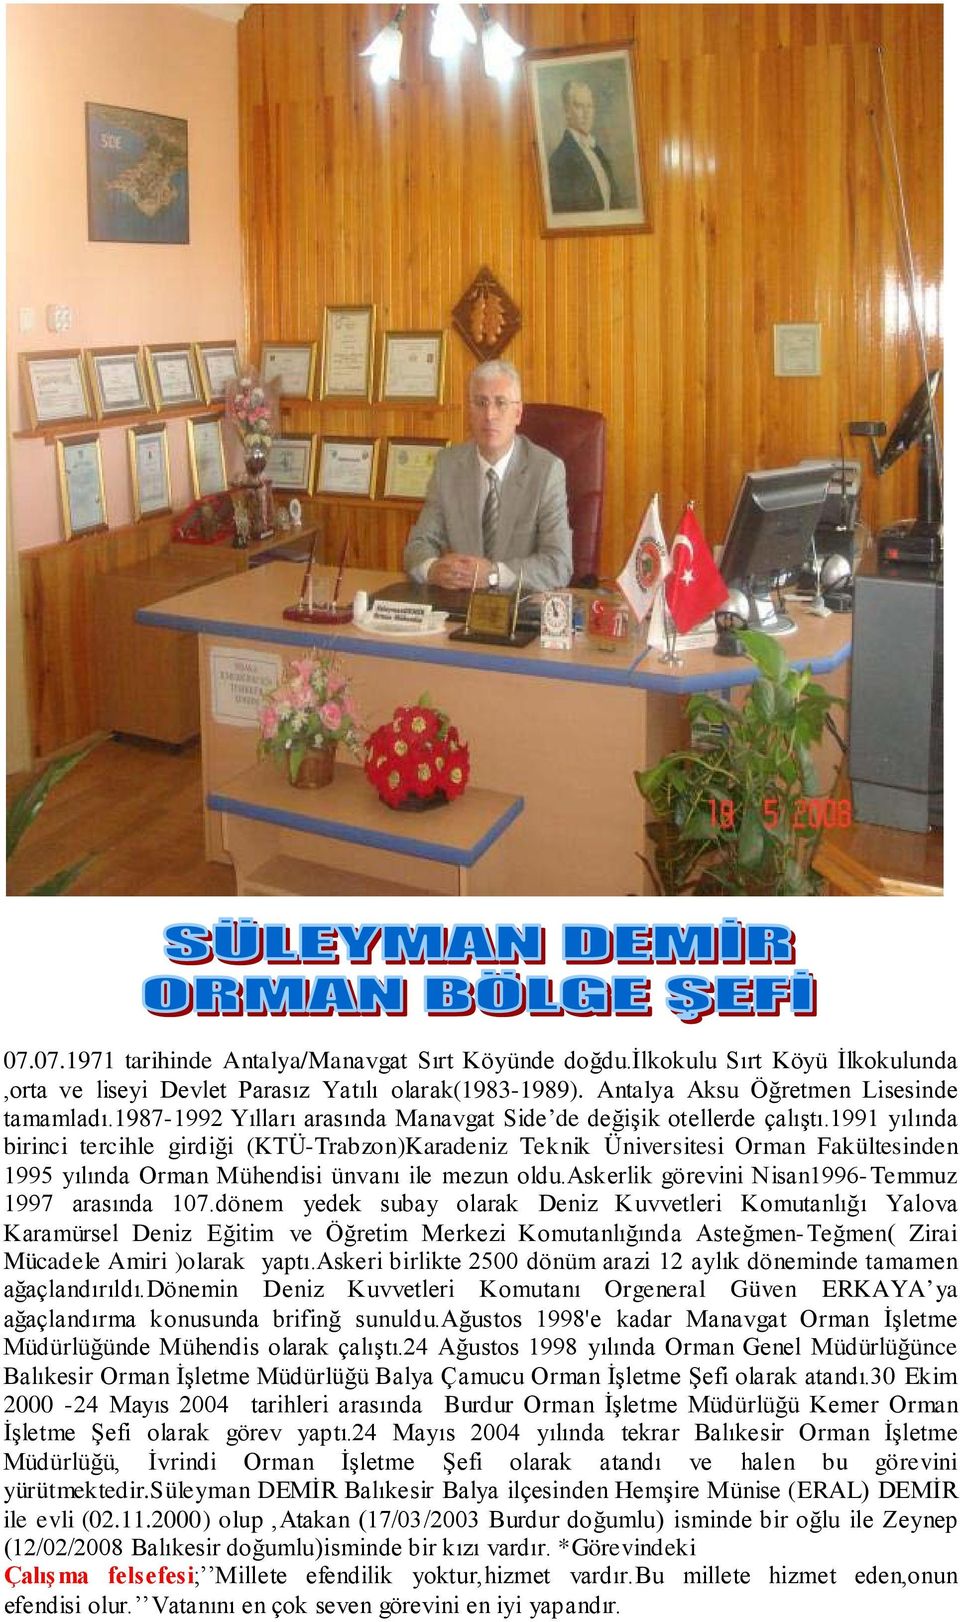 1991 yılında birinci tercihle girdiği (KTÜ-Trabzon)Karadeniz Teknik Üniversitesi Orman Fakültesinden 1995 yılında Orman Mühendisi ünvanı ile mezun oldu.